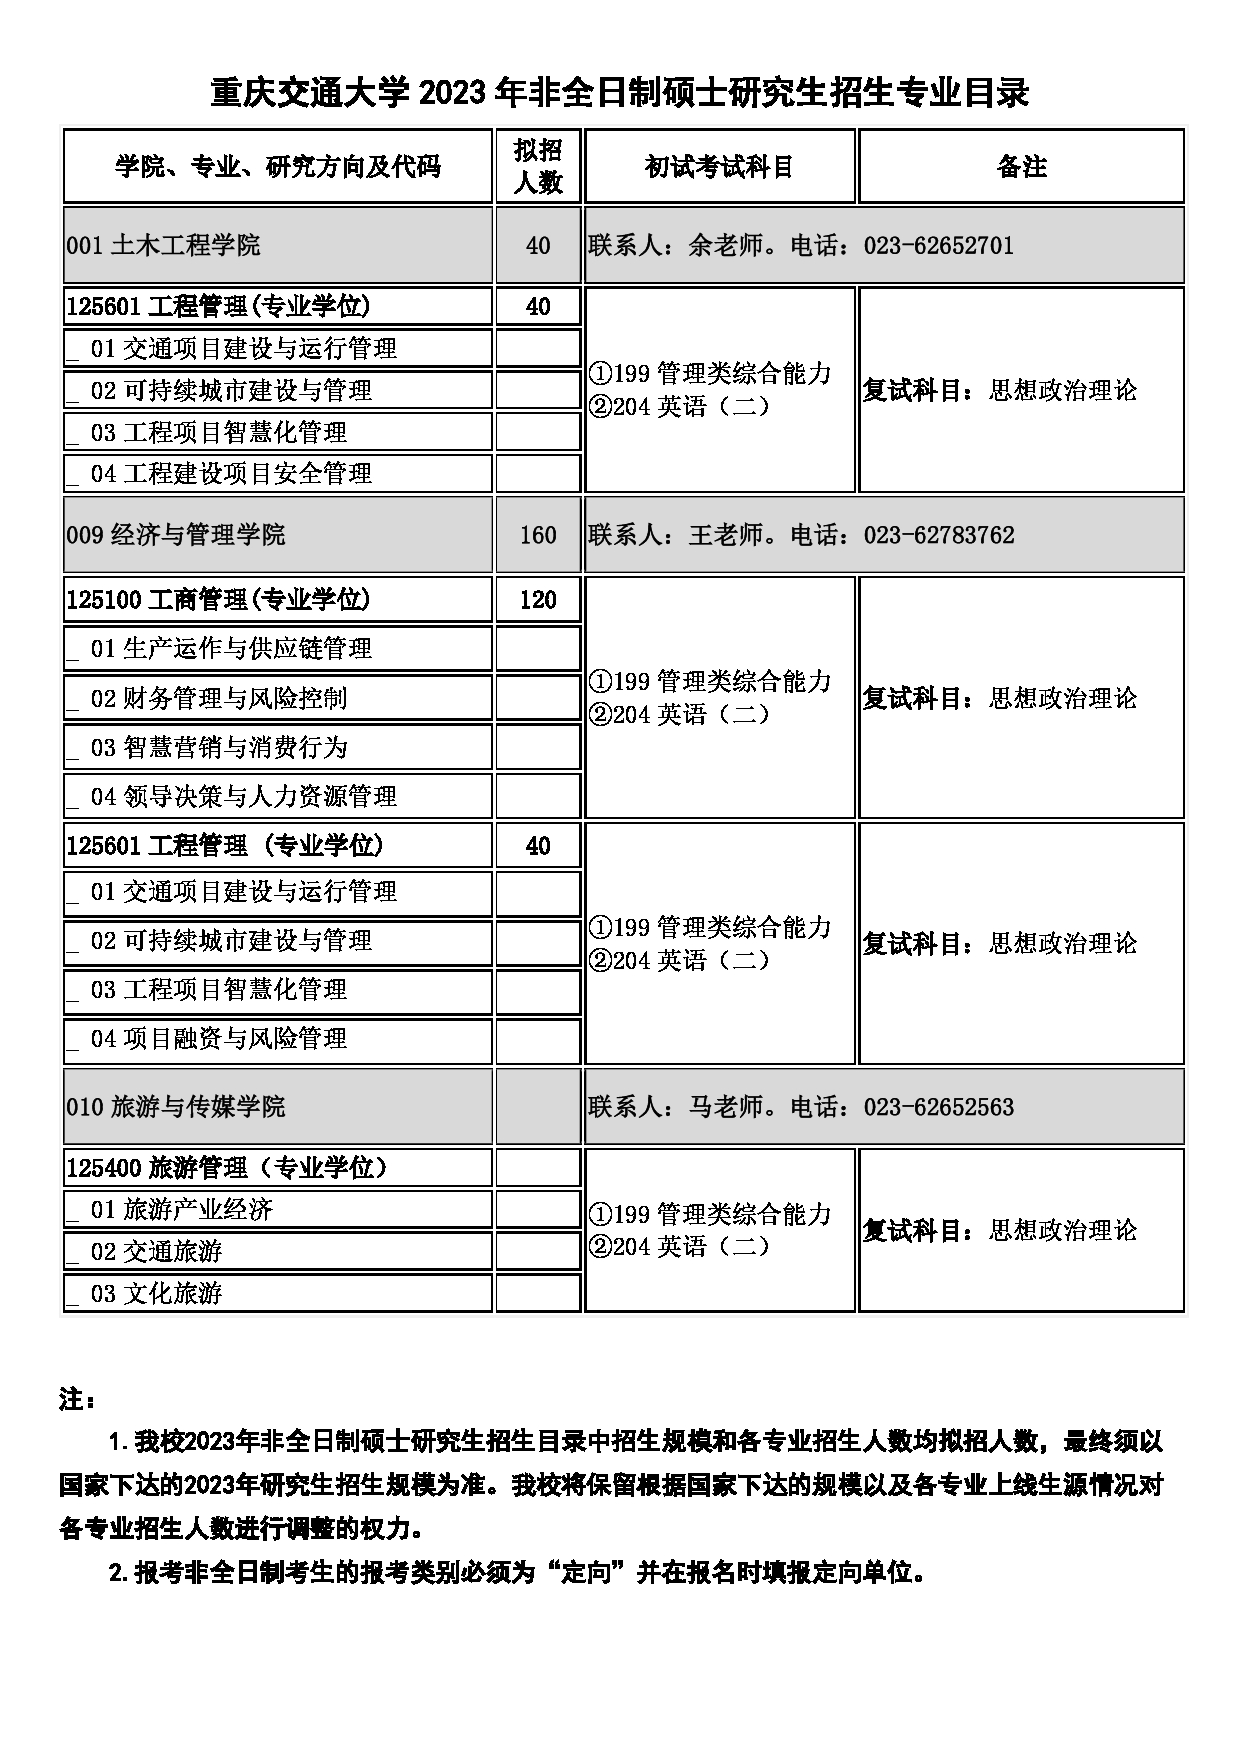 2023招生目录：重庆交通大学2023年硕士研究生招生目录第13页